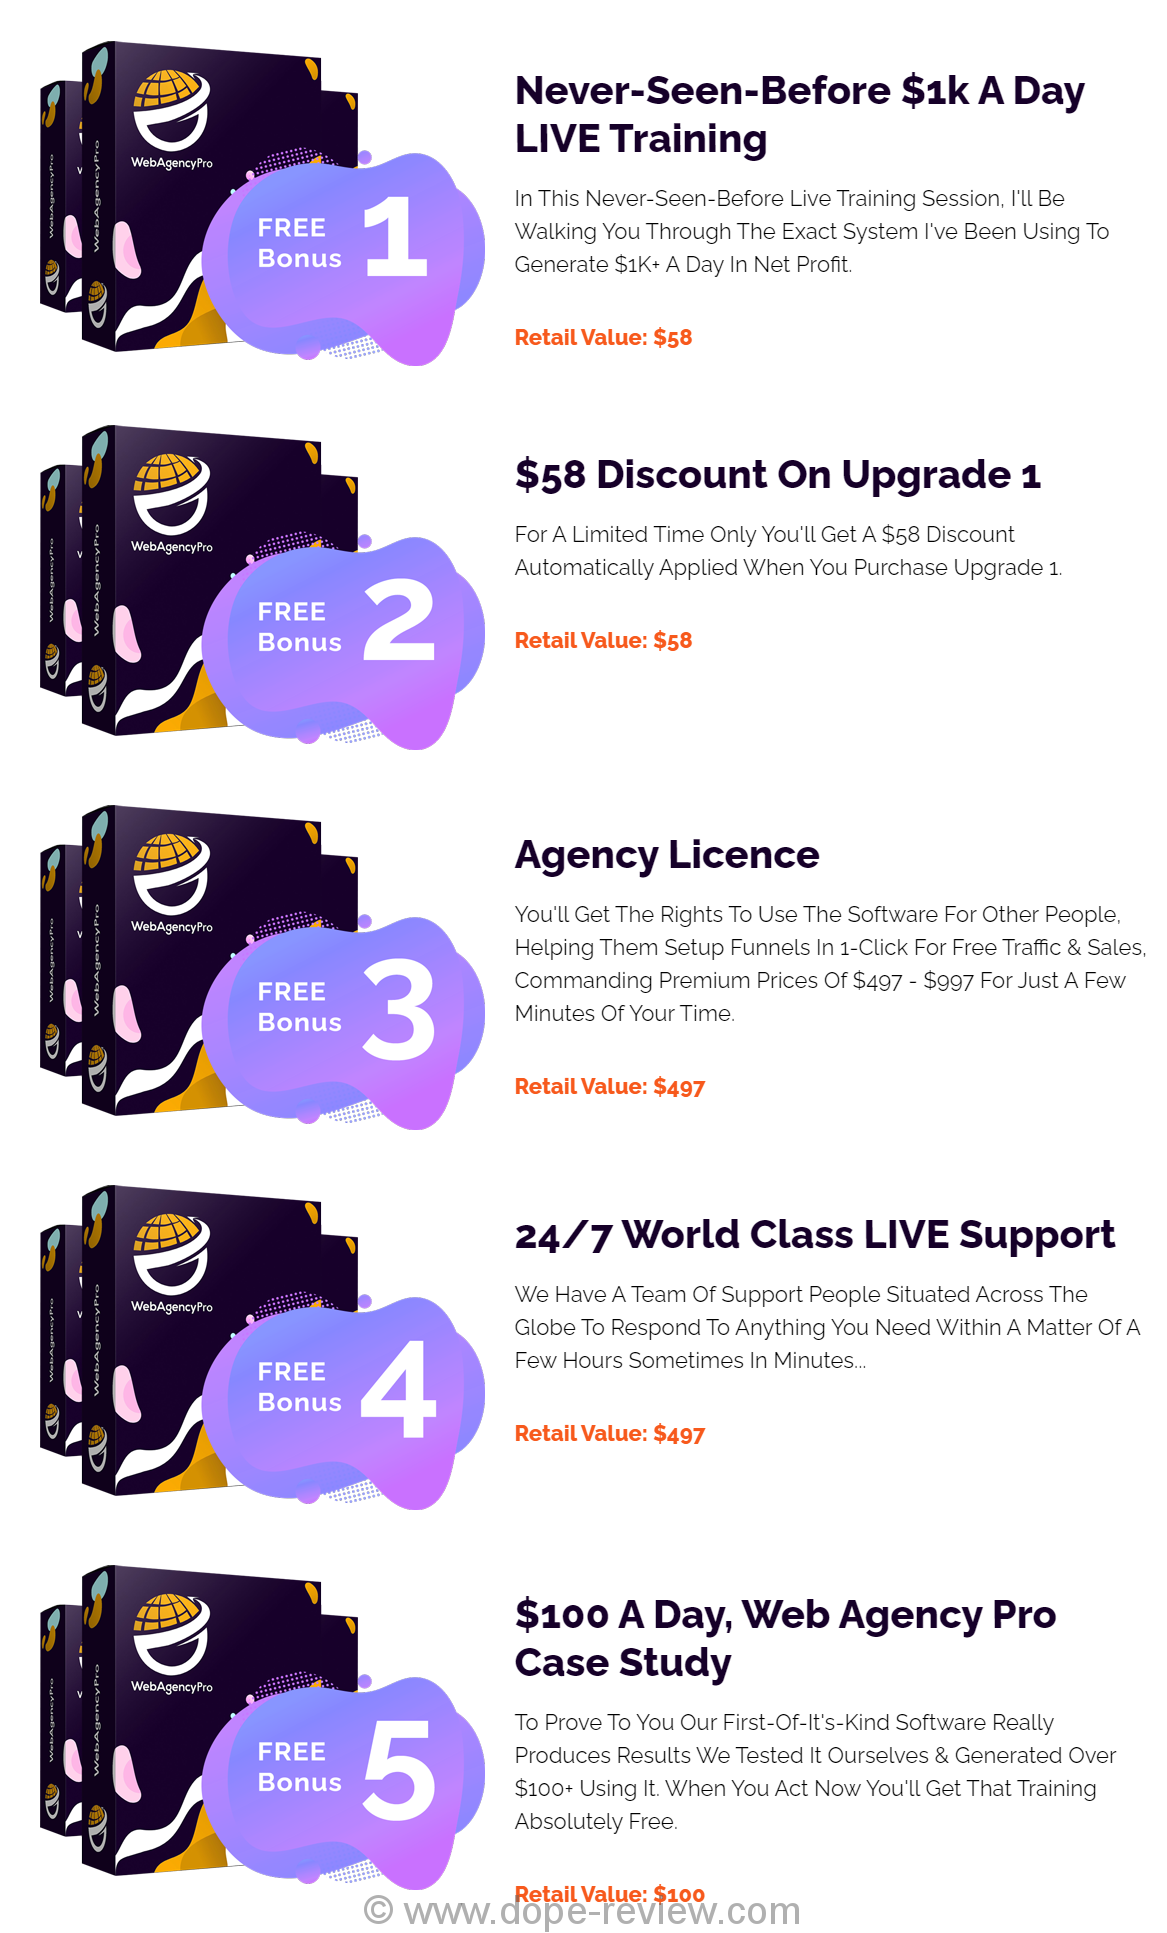 Web Agency Pro Bonus